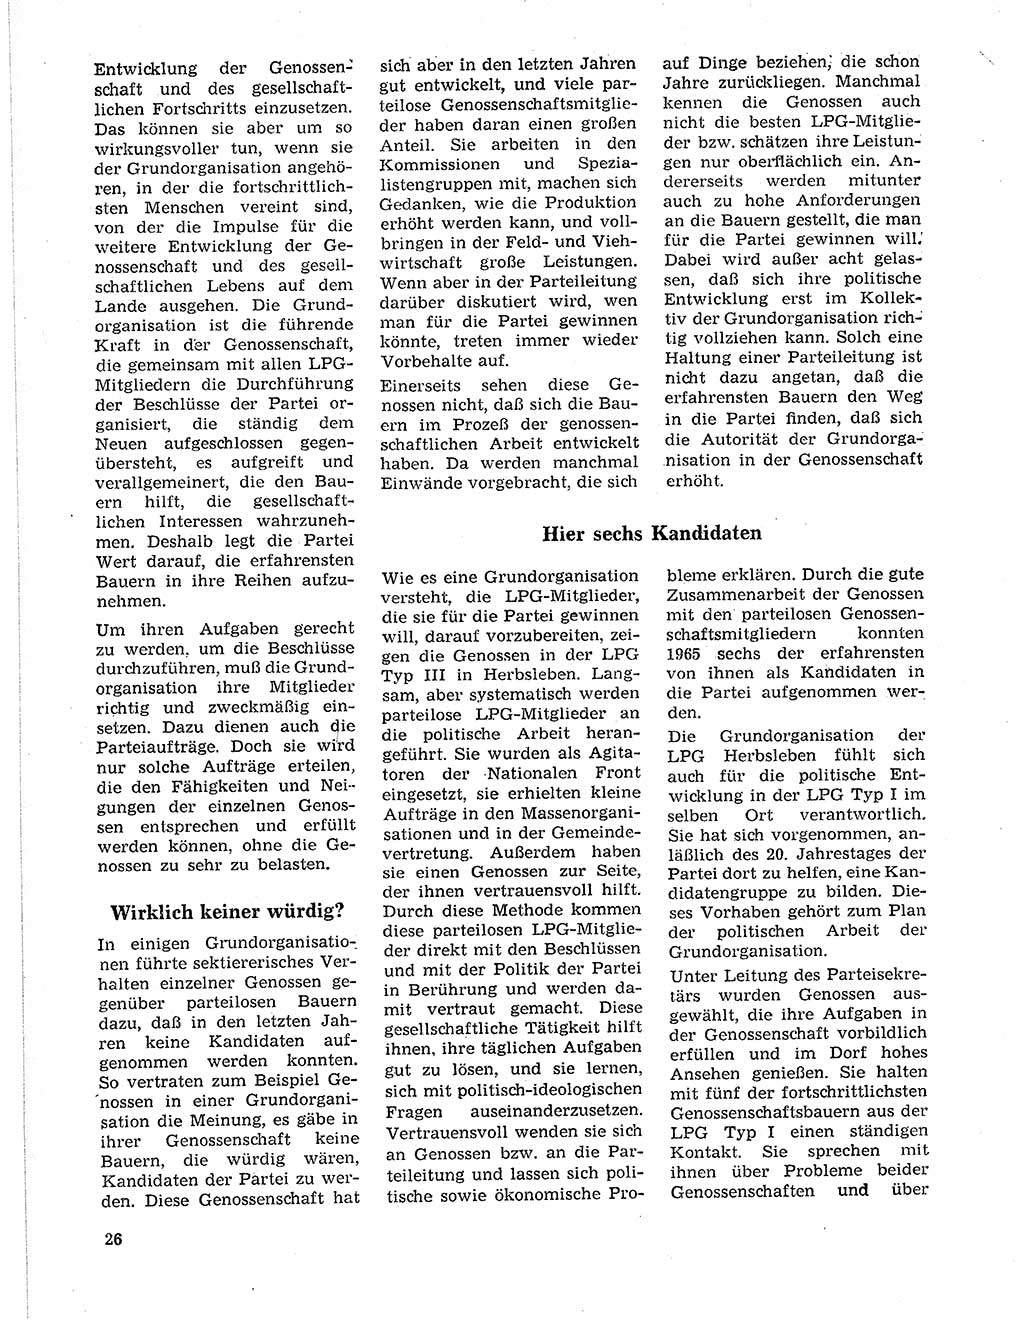 Neuer Weg (NW), Organ des Zentralkomitees (ZK) der SED (Sozialistische Einheitspartei Deutschlands) fÃ¼r Fragen des Parteilebens, 21. Jahrgang [Deutsche Demokratische Republik (DDR)] 1966, Seite 26 (NW ZK SED DDR 1966, S. 26)